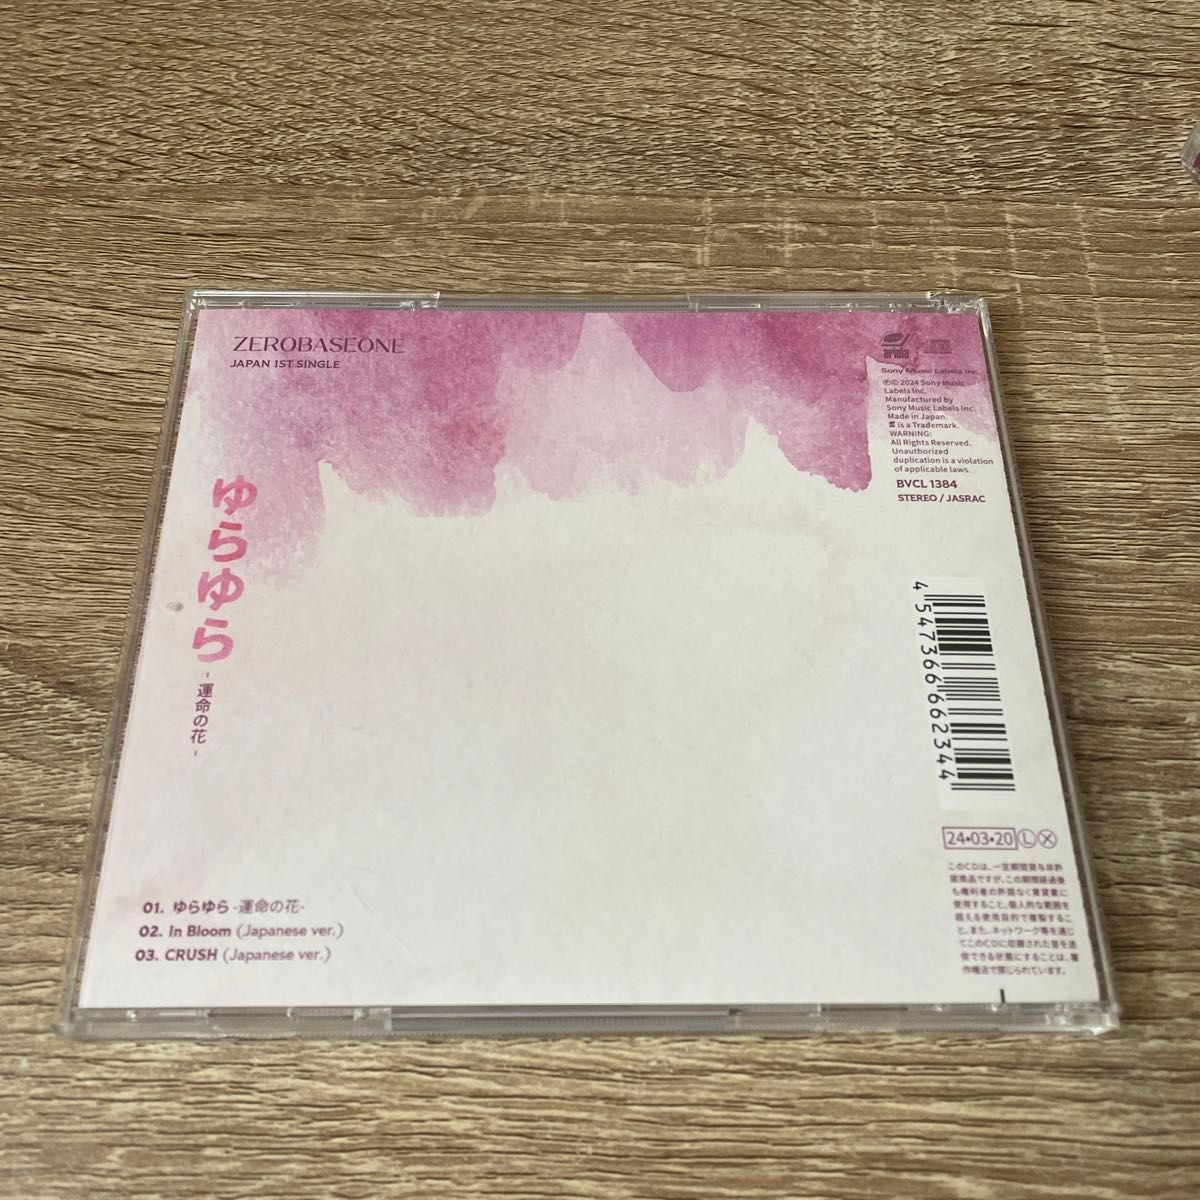  ゆらゆら -運命の花- 完全生産限定盤 ソロ盤 (SUNG HAN BIN ver.) CD ZEROBASEONE 佐賀.